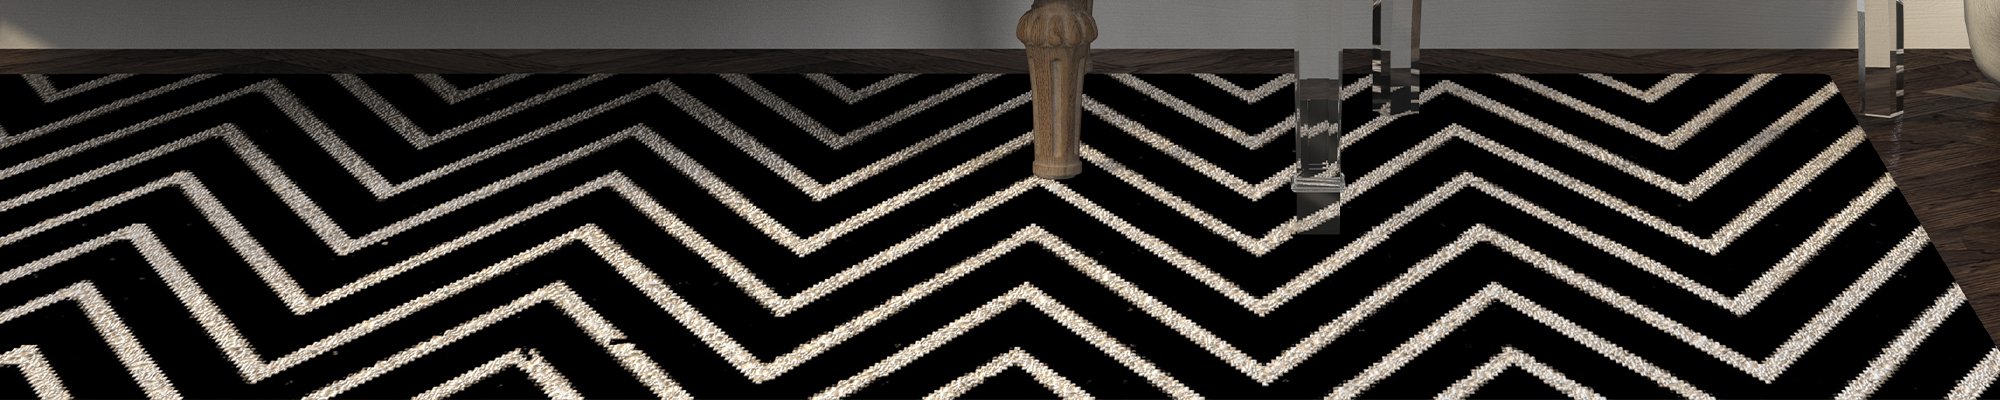 black patterned area rug from Pioneer Floor Coverings & Design in Cedar City, Washington,  UT